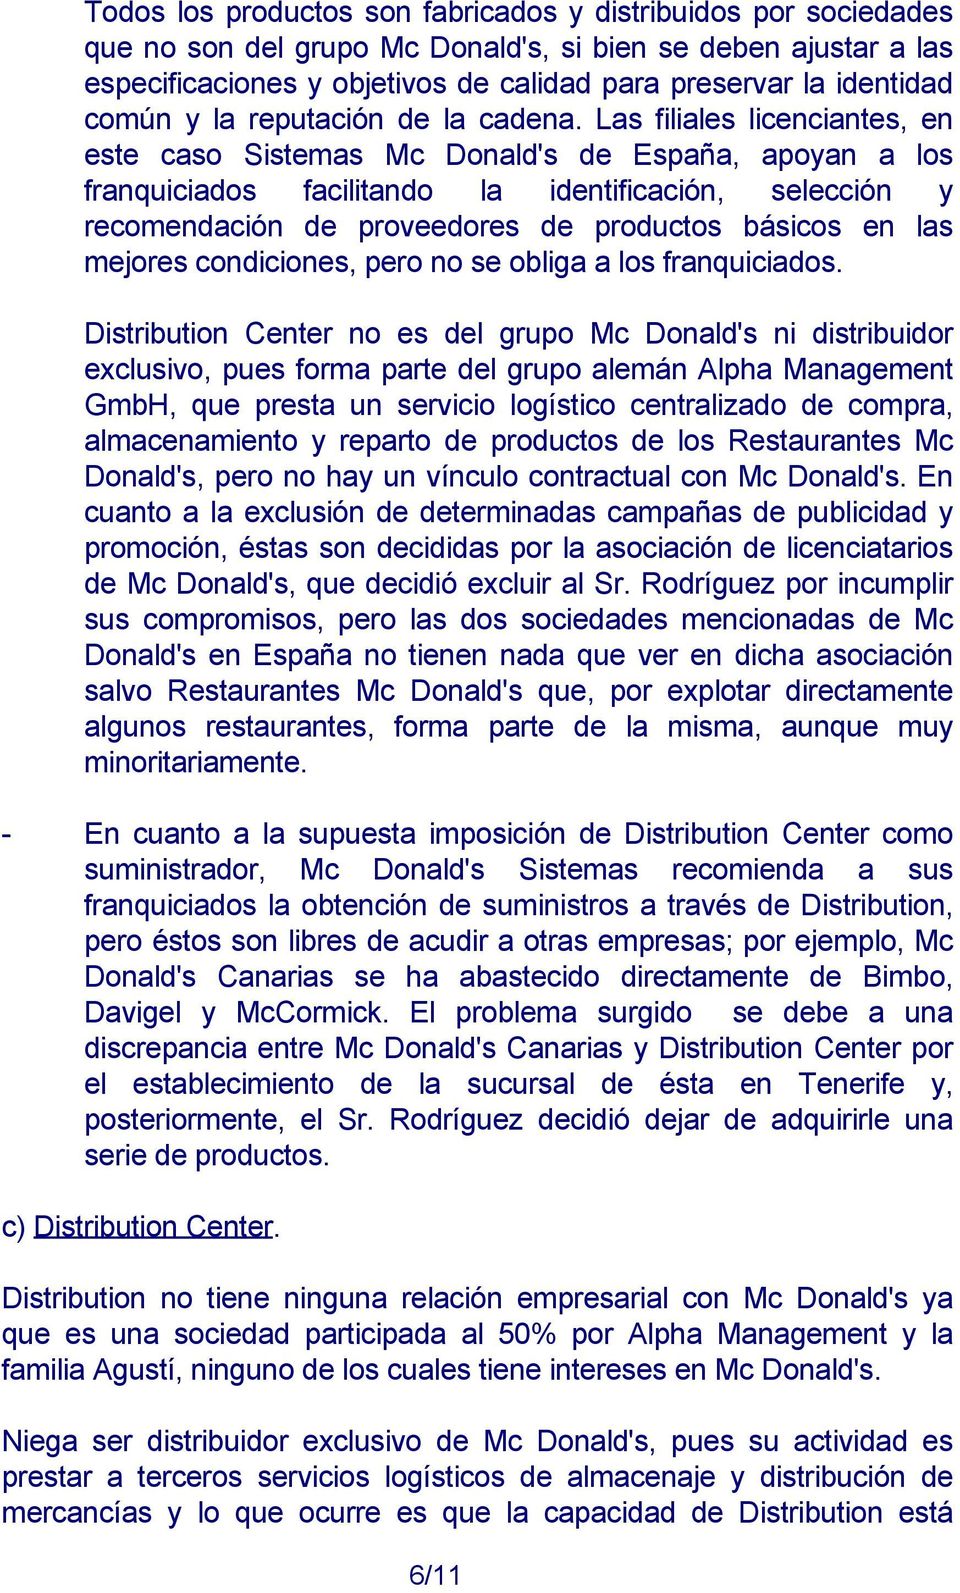 Las filiales licenciantes, en este caso Sistemas Mc Donald's de España, apoyan a los franquiciados facilitando la identificación, selección y recomendación de proveedores de productos básicos en las